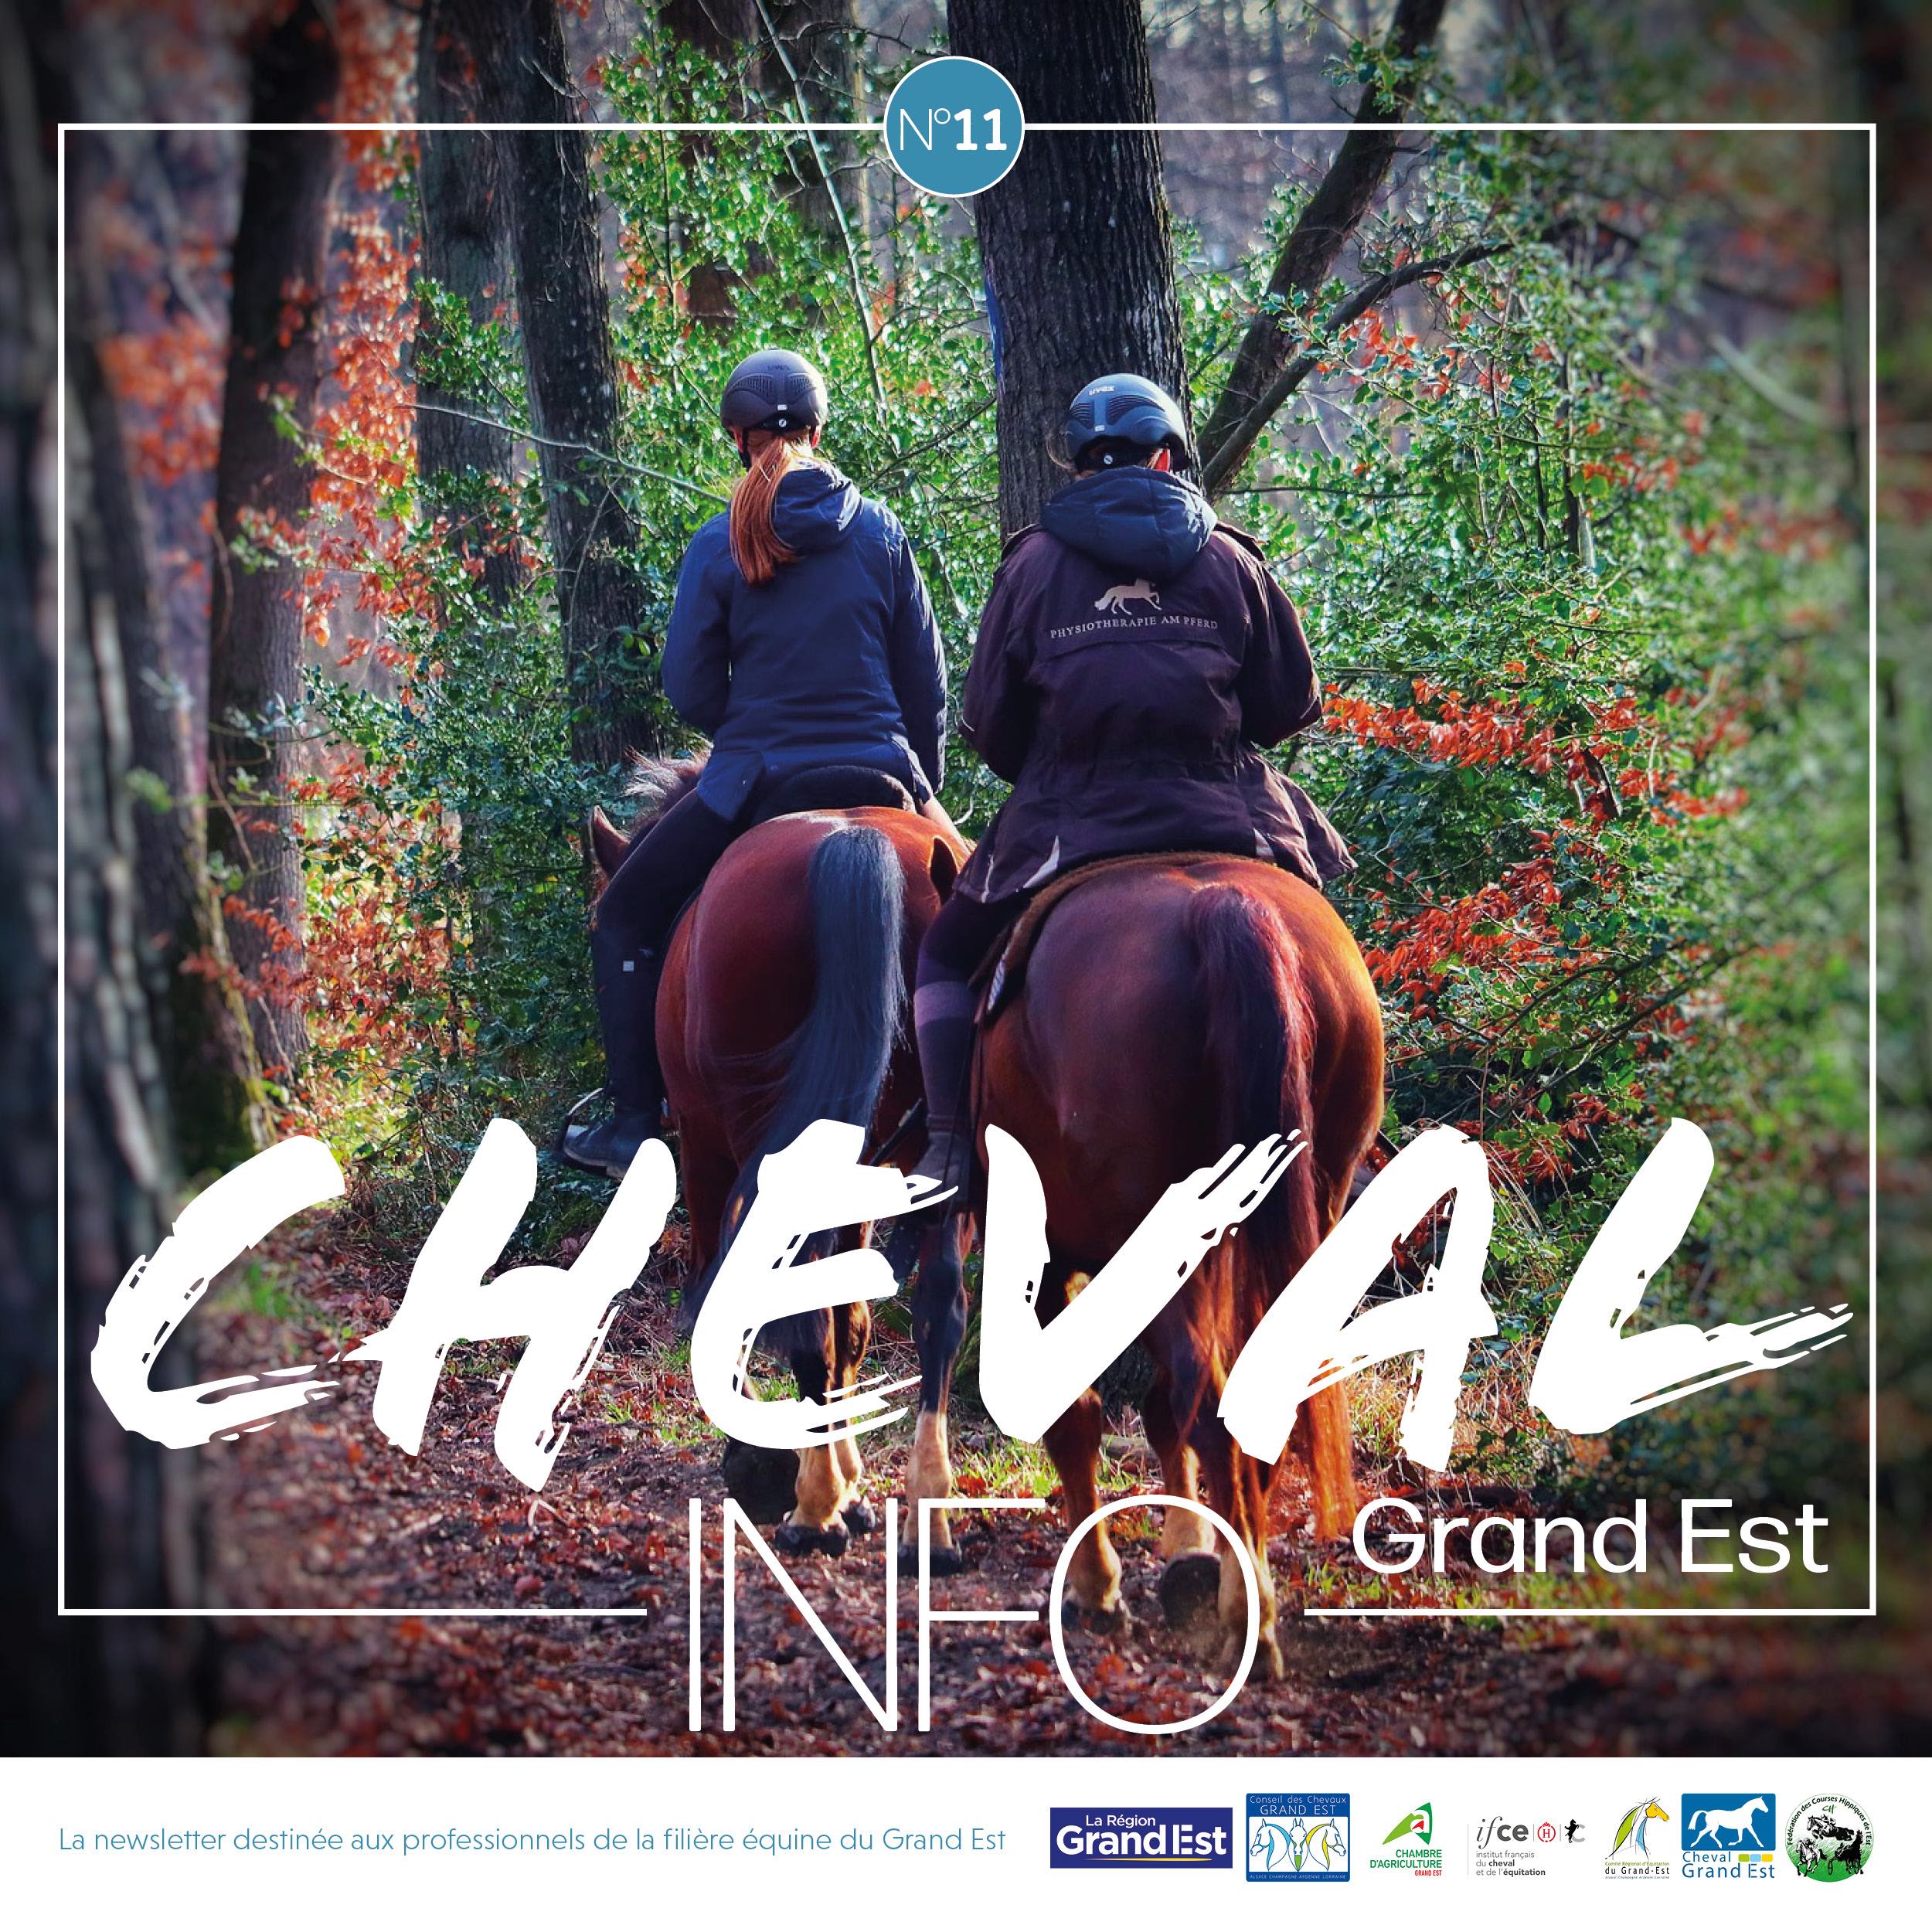 Cheval Grand Est, la newsletter des institutions de la filière équine